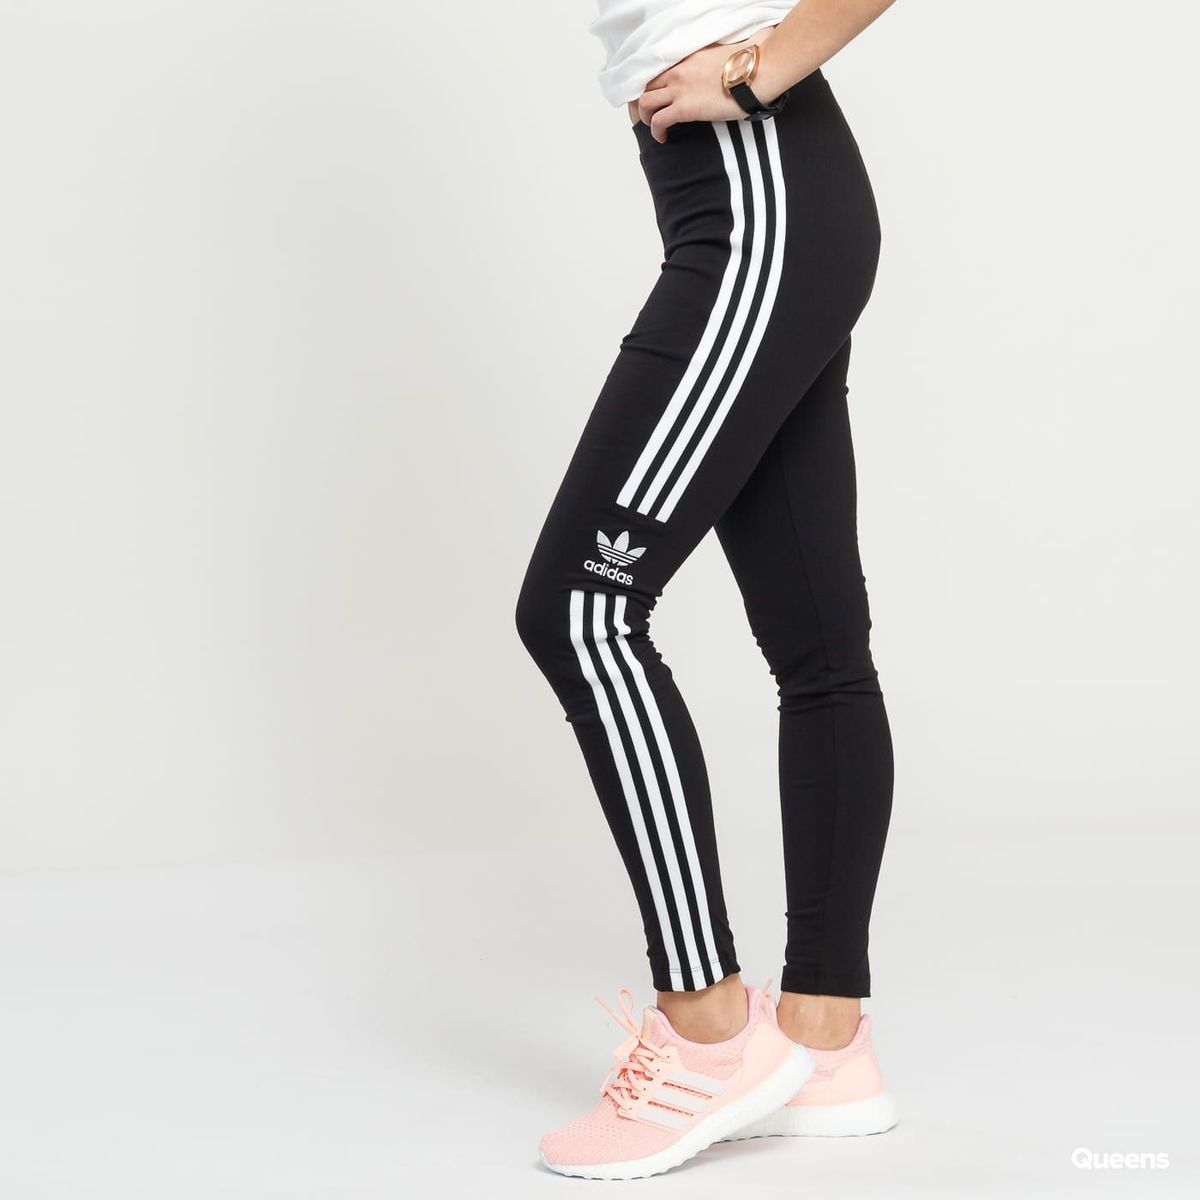 Calça Legging Adidas Originals Trefoil Feminina